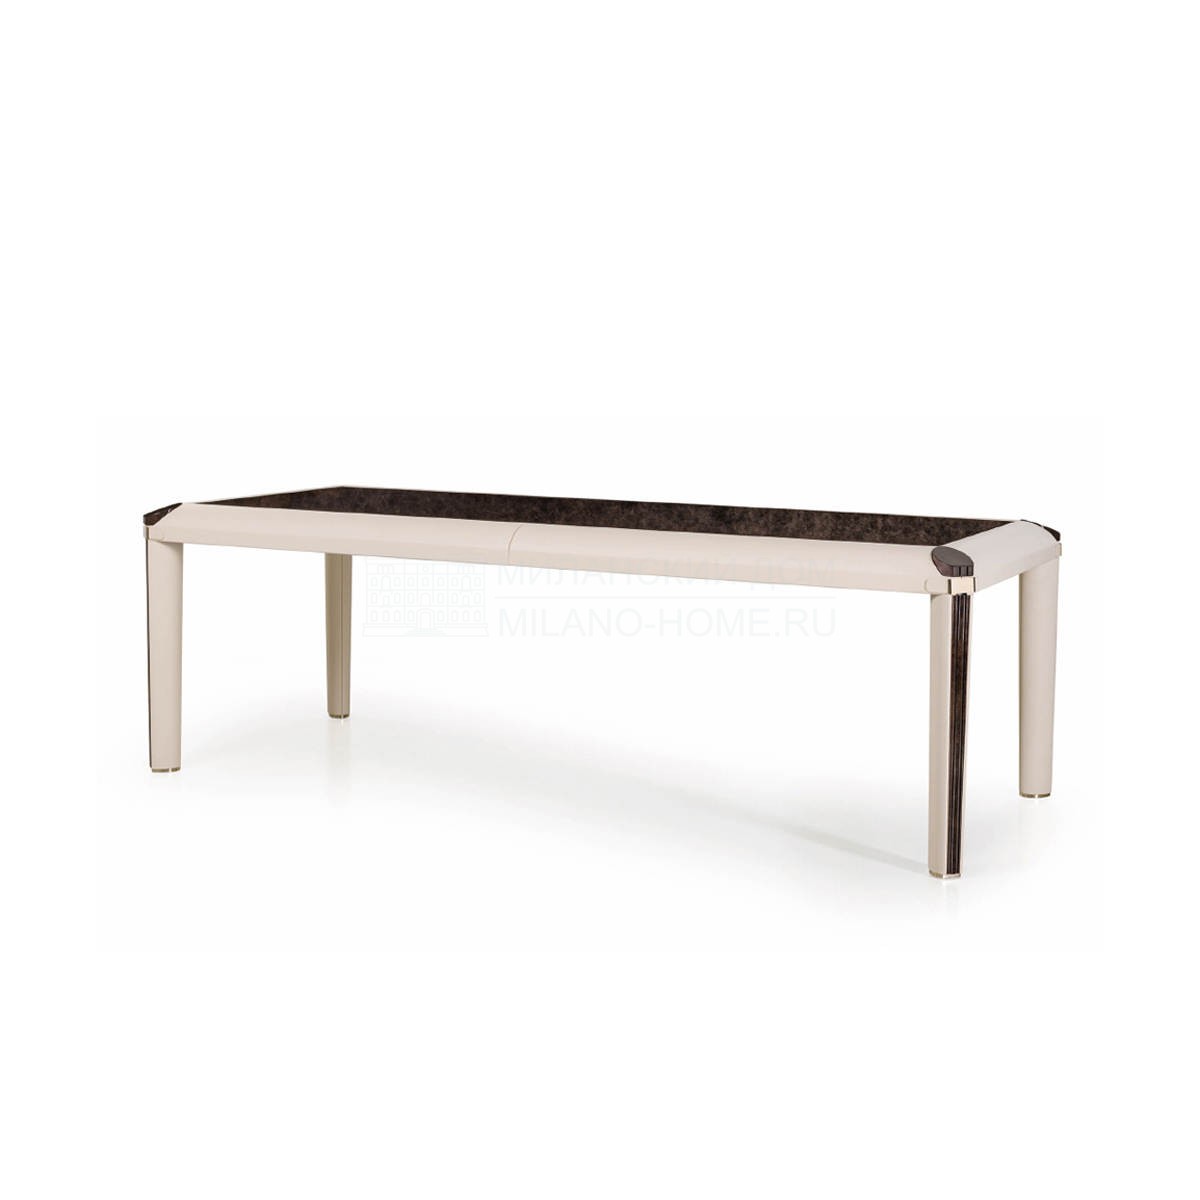 Обеденный стол Eclipse rectangular table из Италии фабрики TURRI